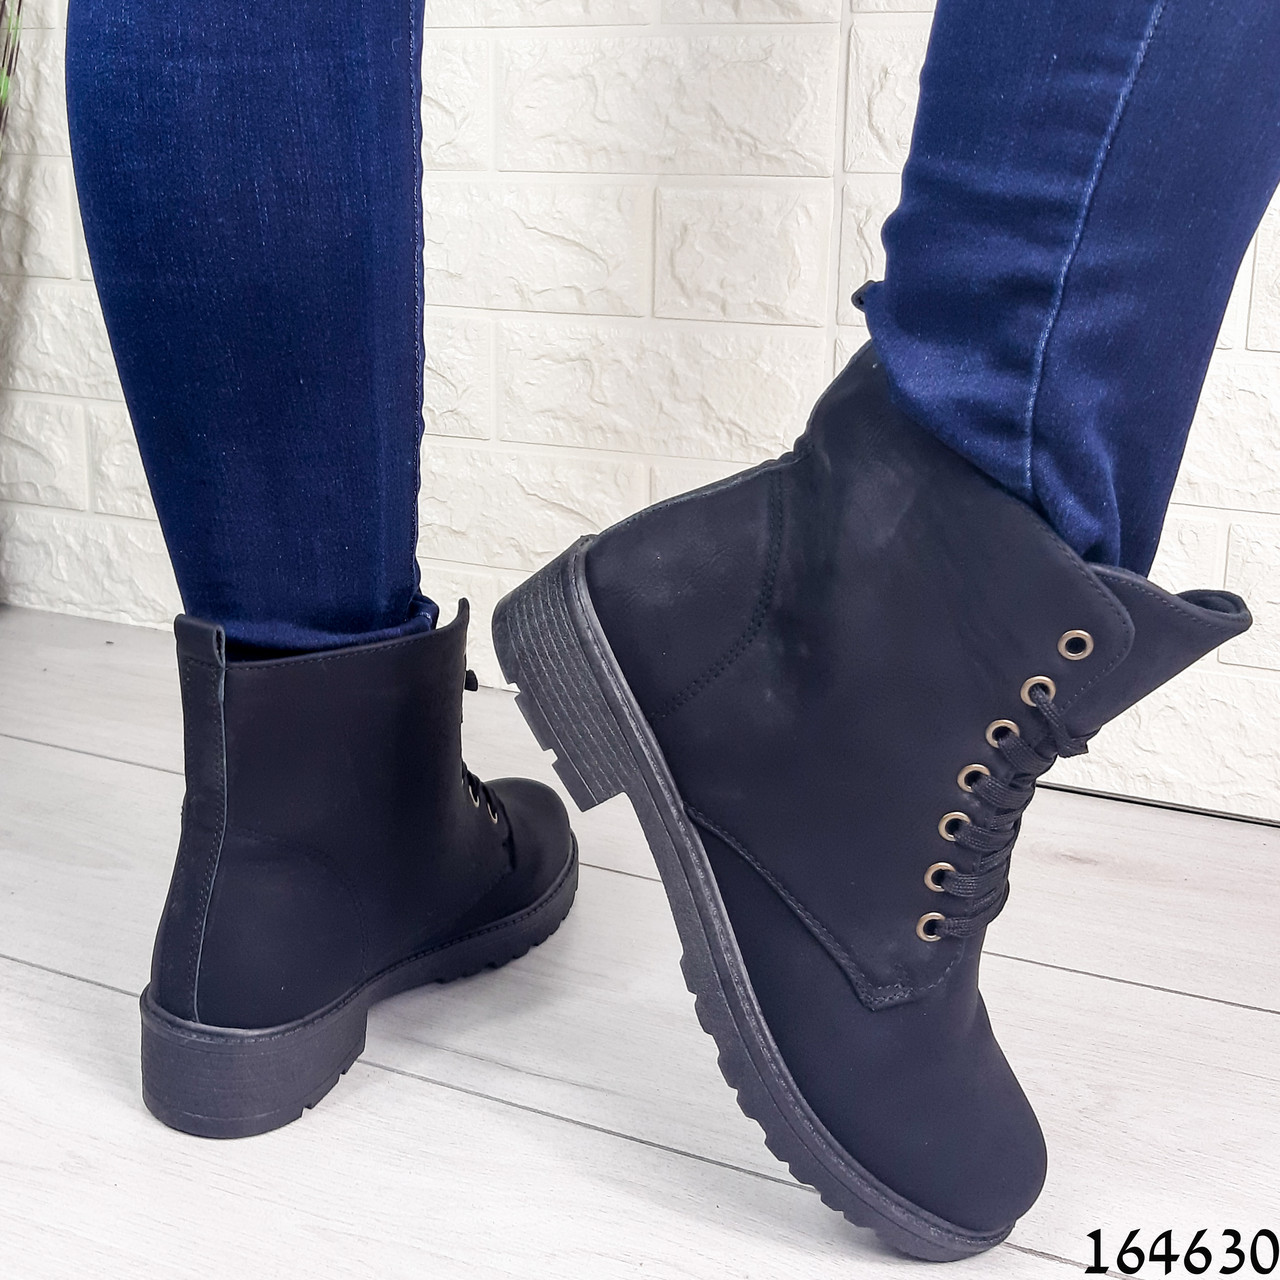 Жіночі черевики демісезонні чорні з еко нубуку. Усередині фліс (легке еко хутро)